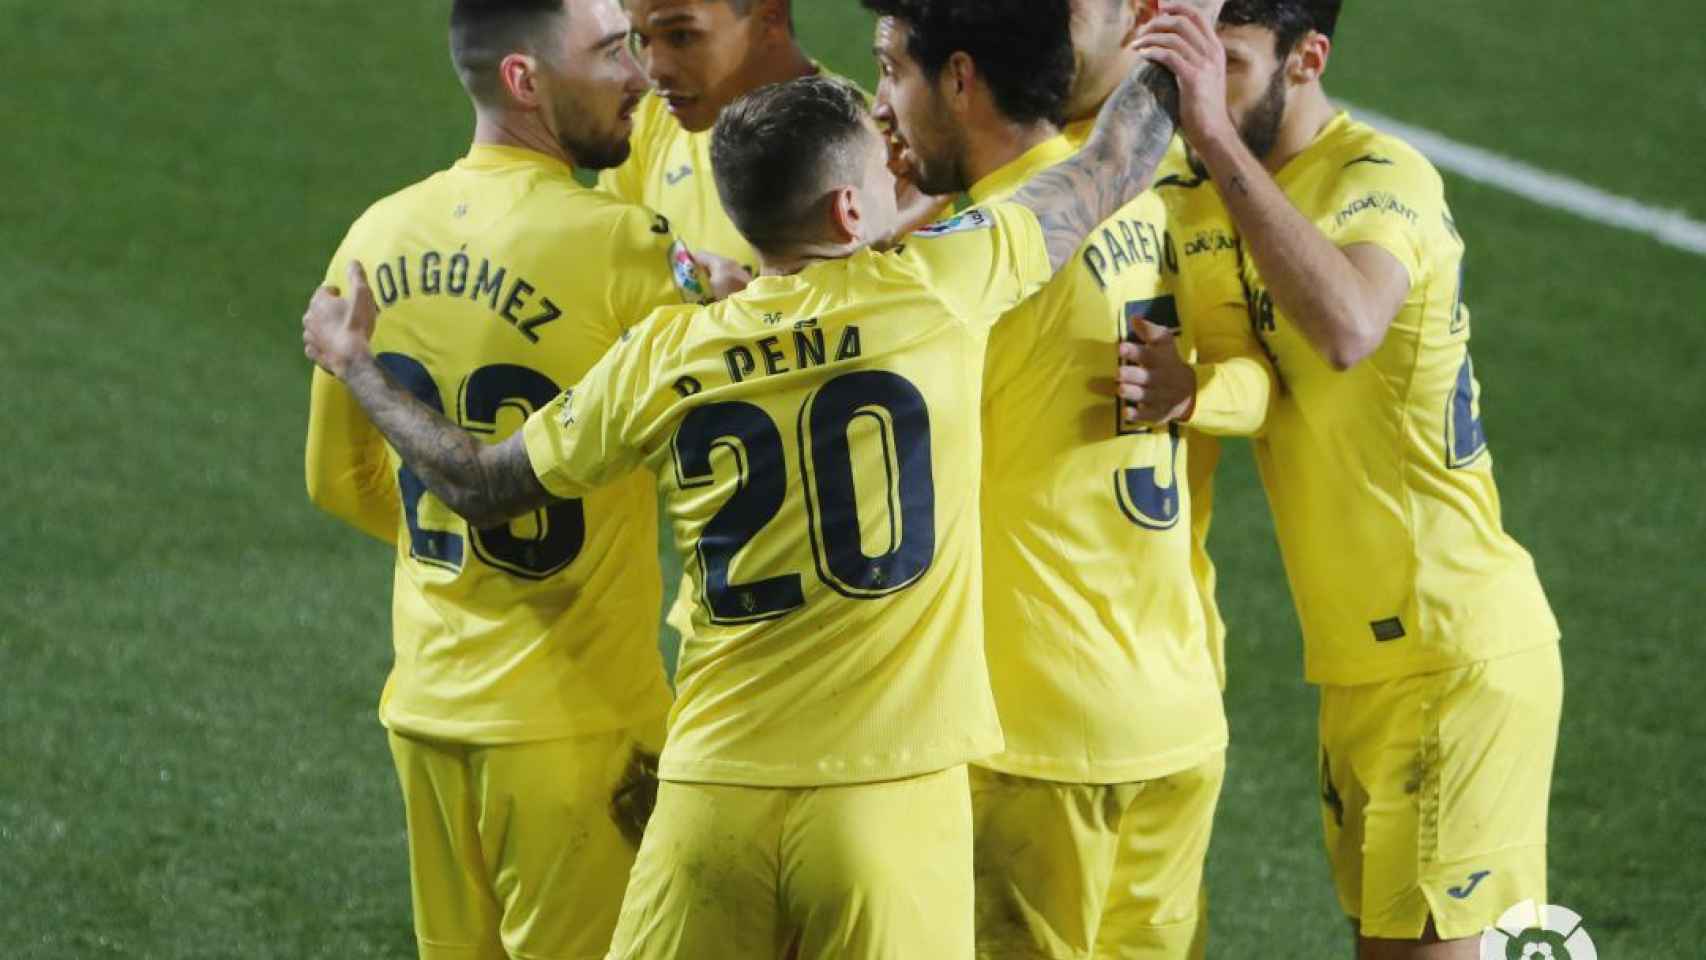 Piña de los jugadores del Villarreal en La Liga